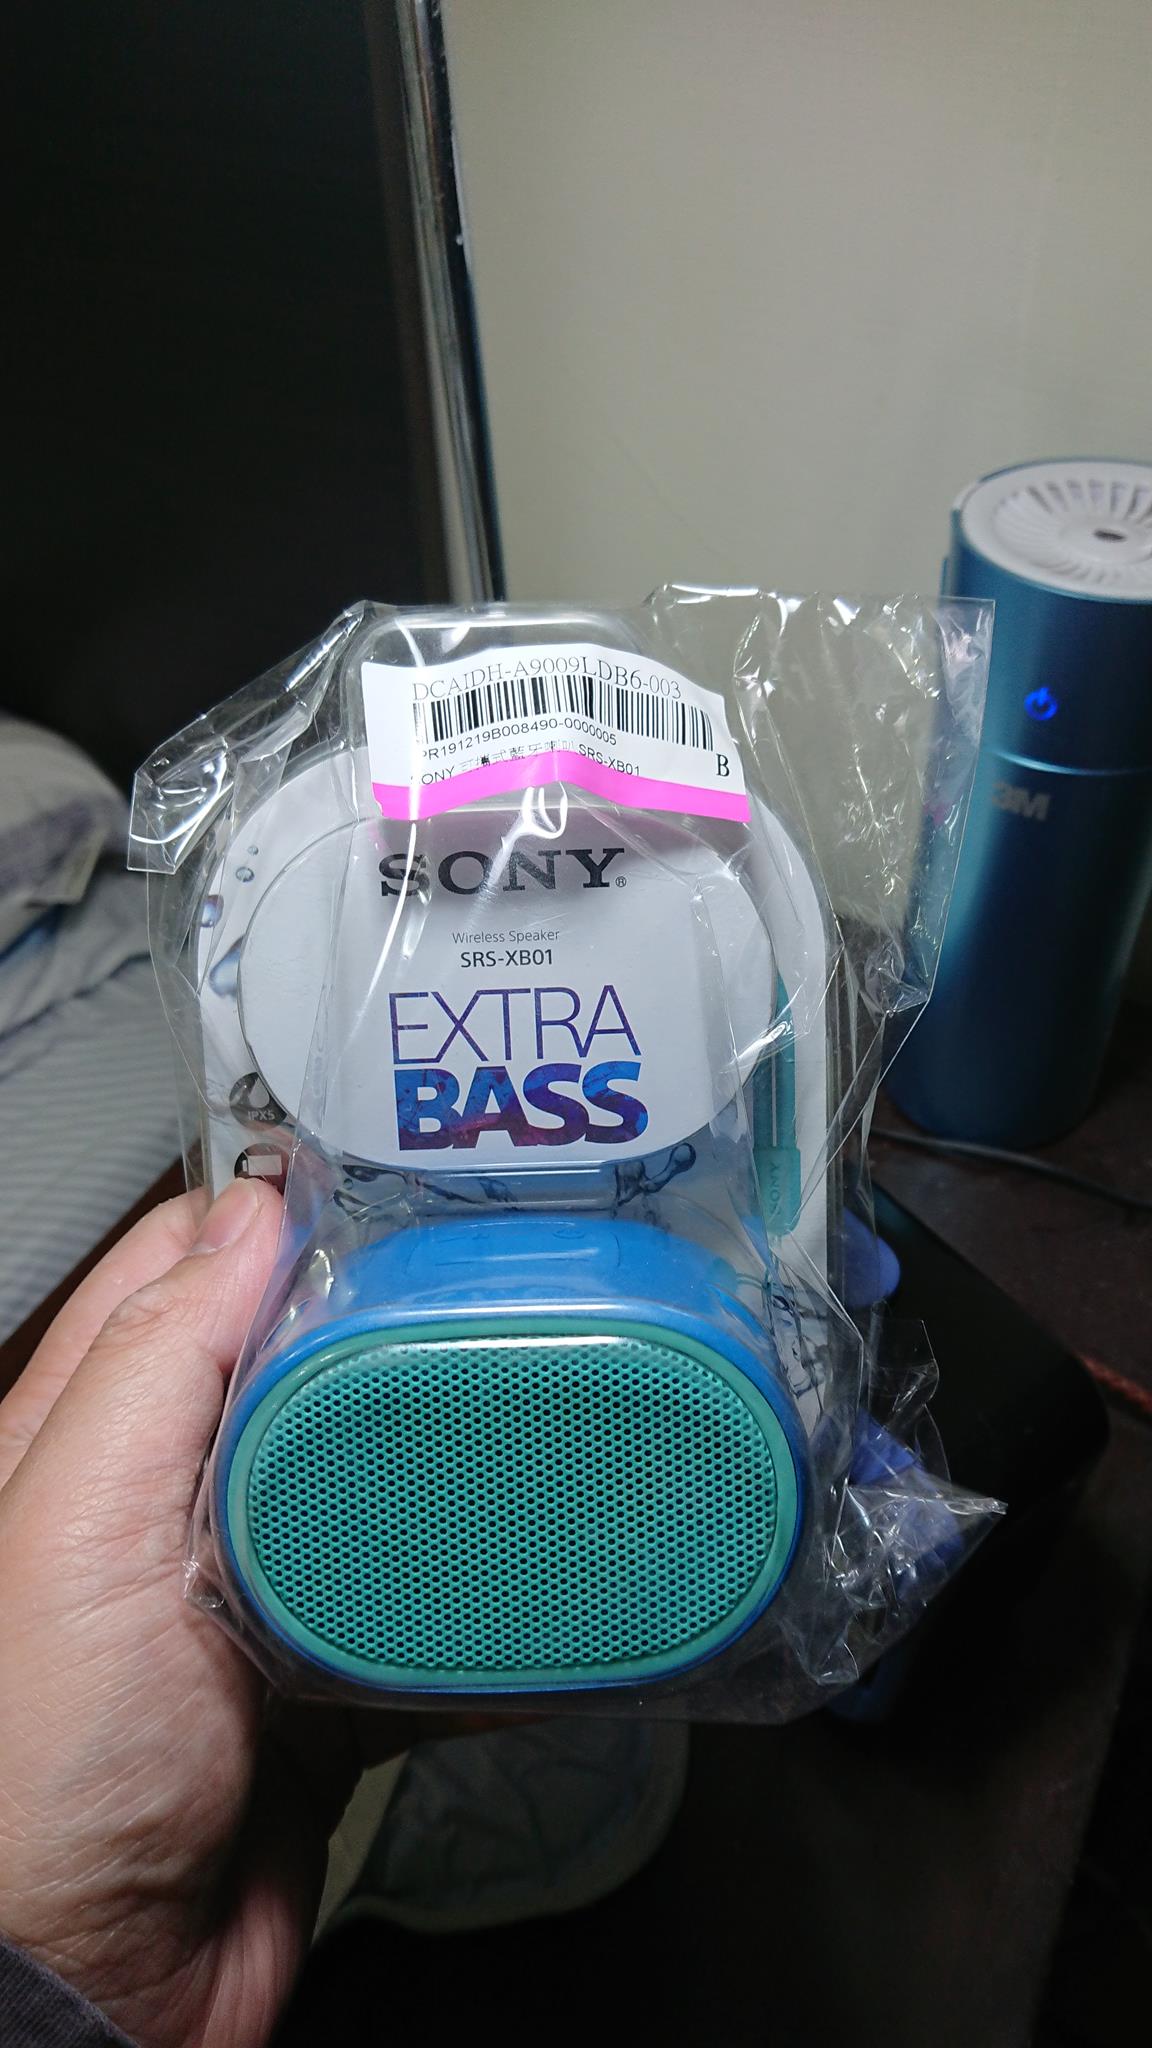 開箱】 SONY可攜式藍牙喇叭-音質不錯/小而巧的索尼小喇叭SRS-XB01 - 台灣貪吃胖的玩樂故事